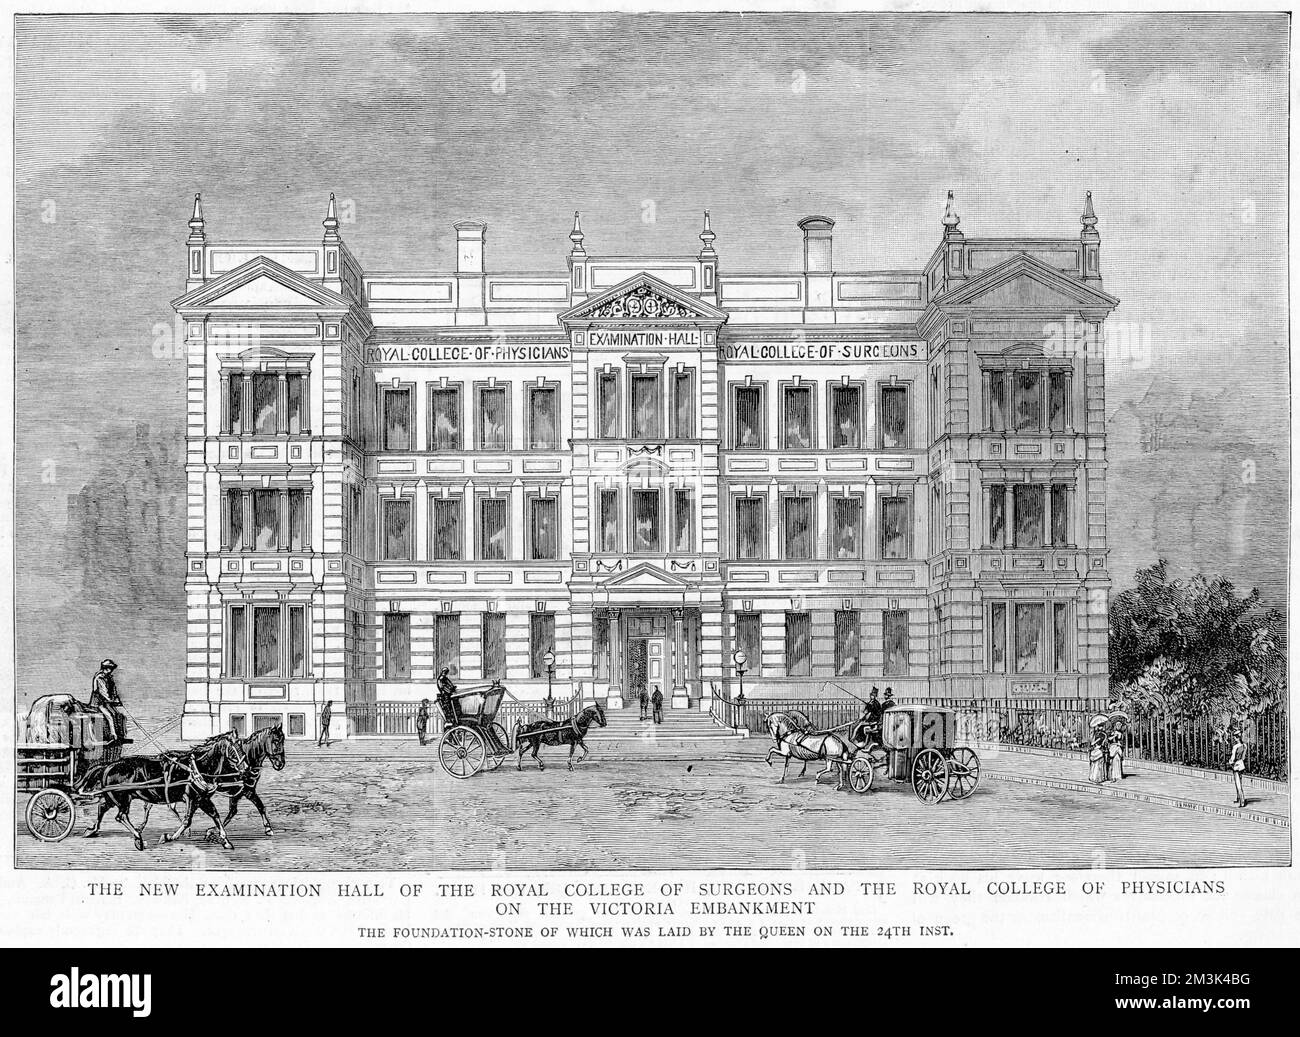 Außenansicht der damals neuen Untersuchungshalle des Royal College of Surgeons und des Royal College of Physicians, Victoria Embankment, London. 1886 Stockfoto